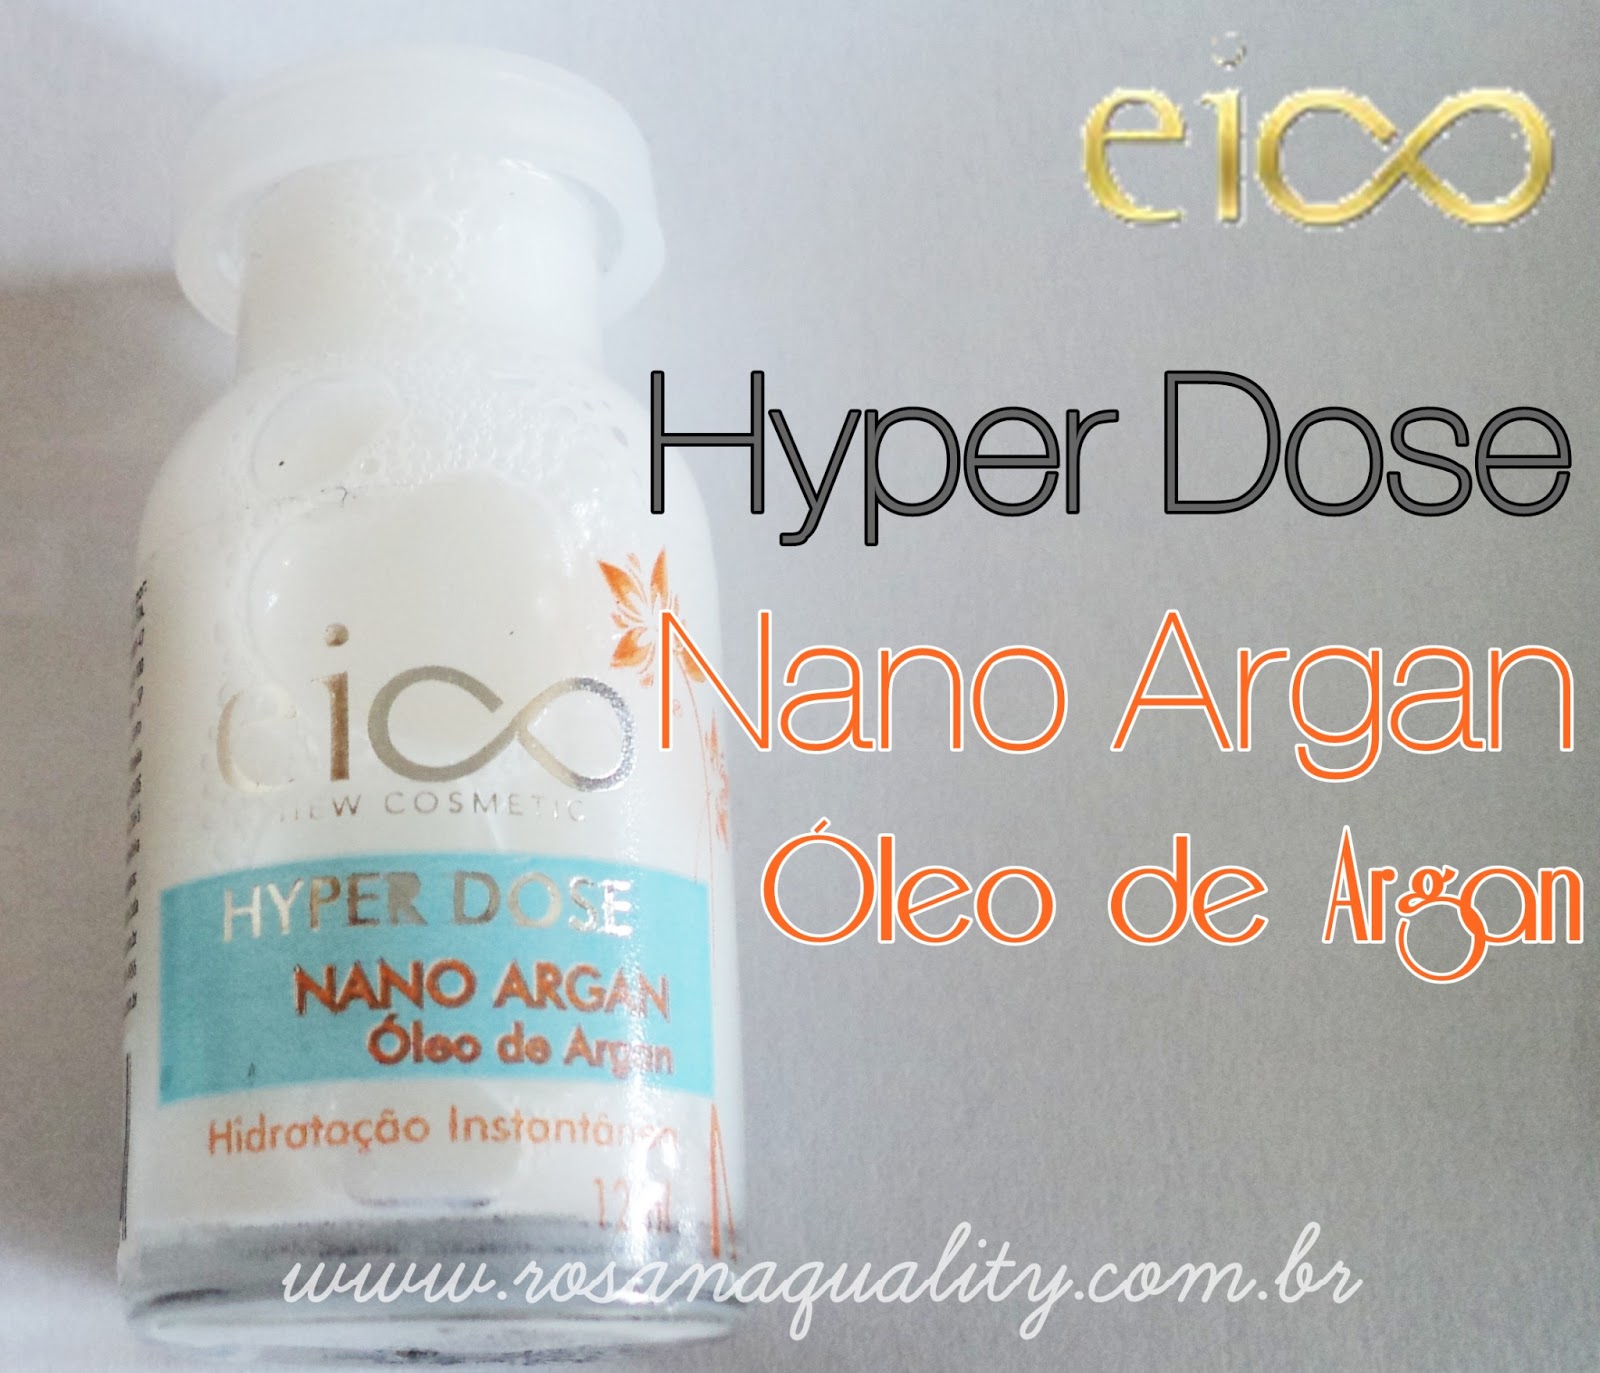 Hyper Dose Nano Argan Eico